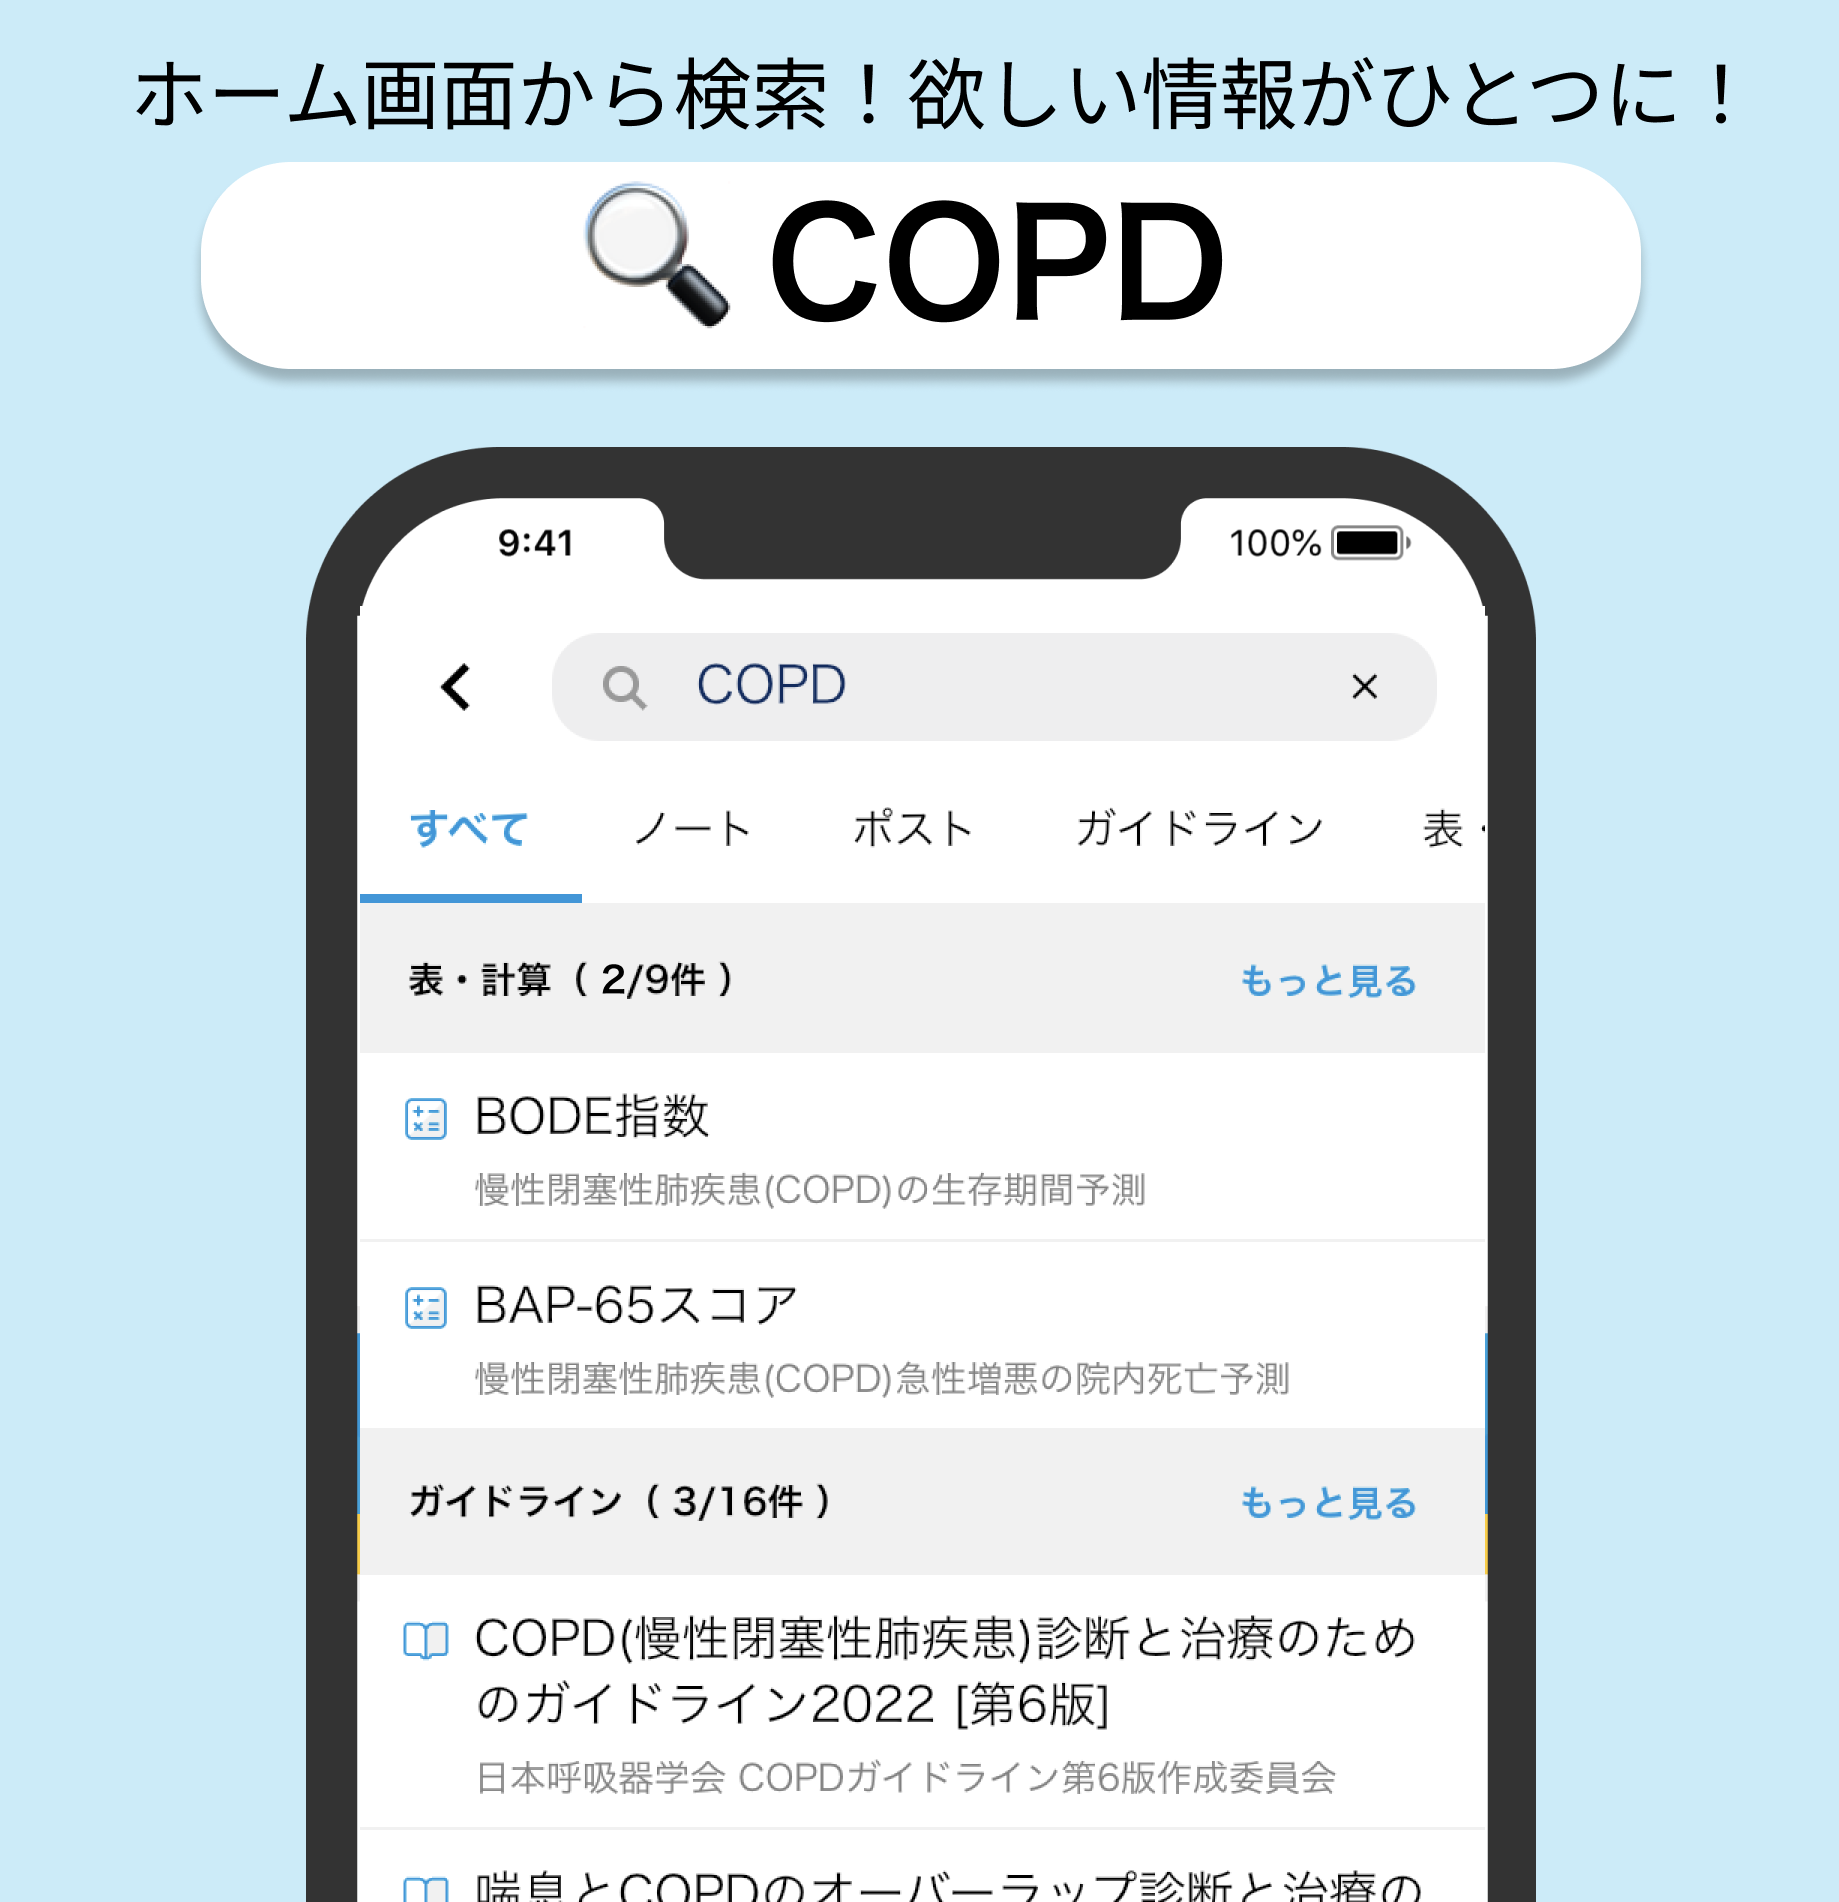 【ツール】COPD急性増悪時のプレドニゾロン個別化用量 (Chest 2021より)